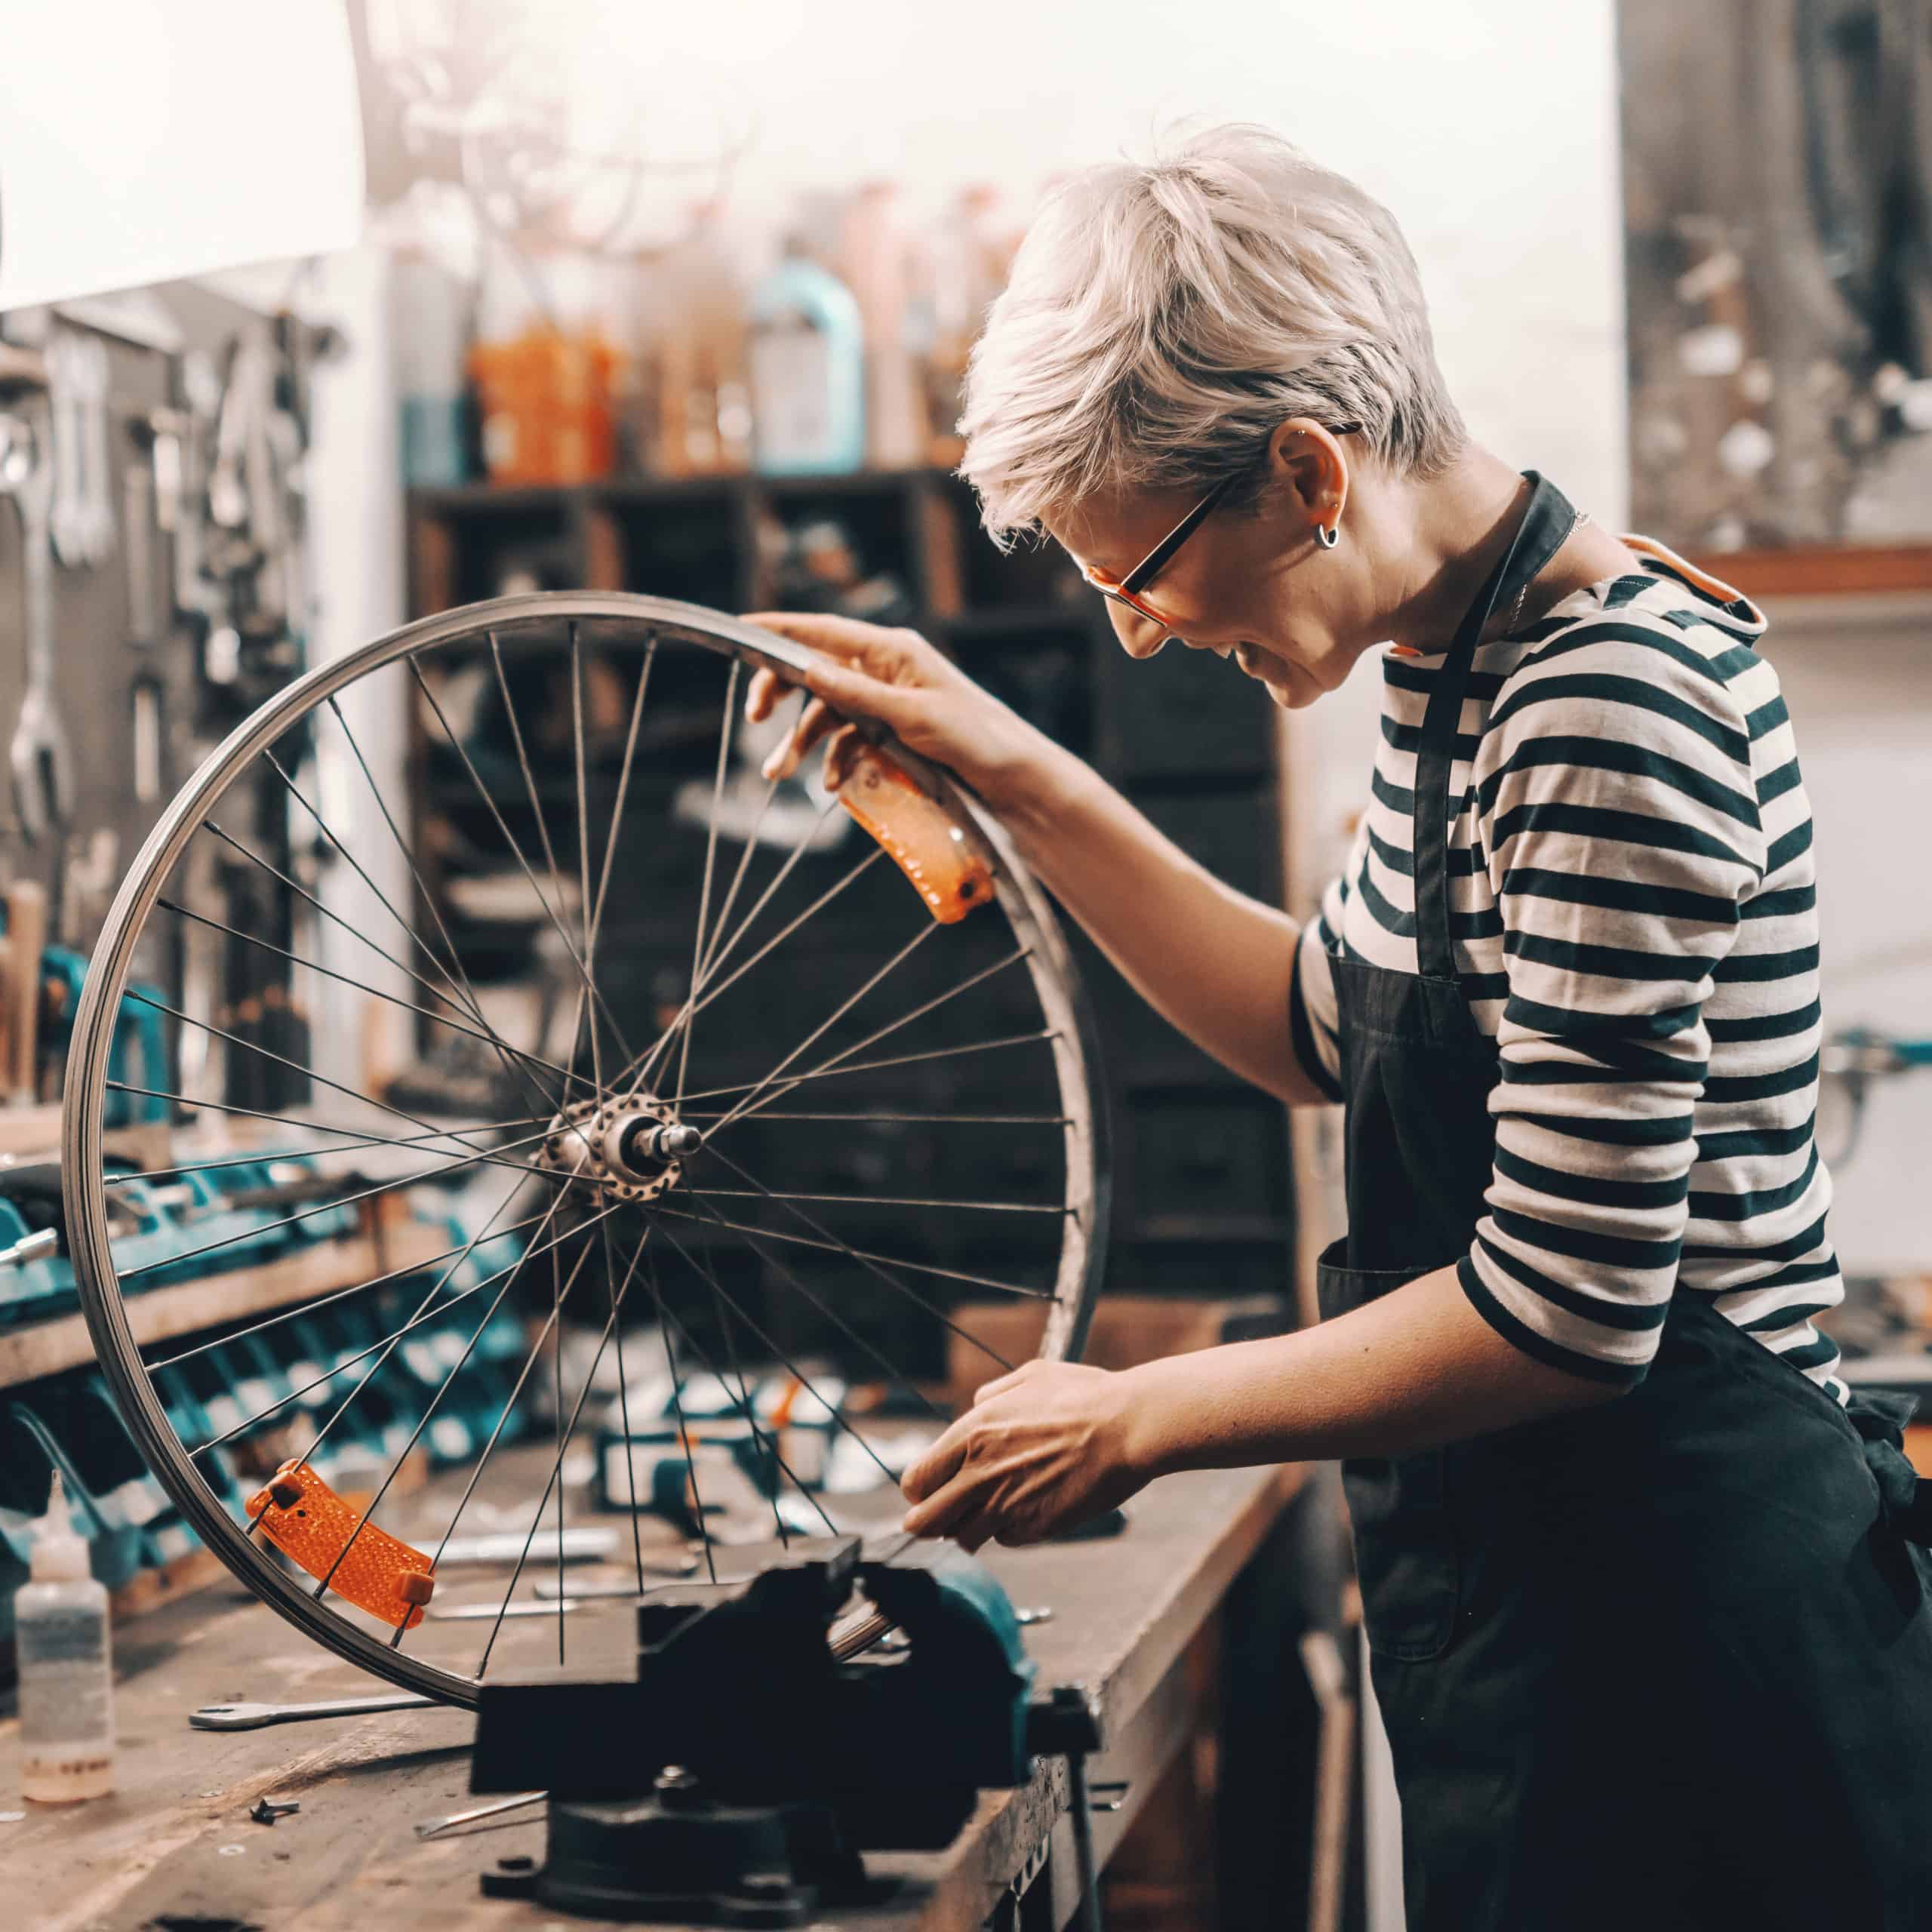 Female repairing a bicycle wheel.